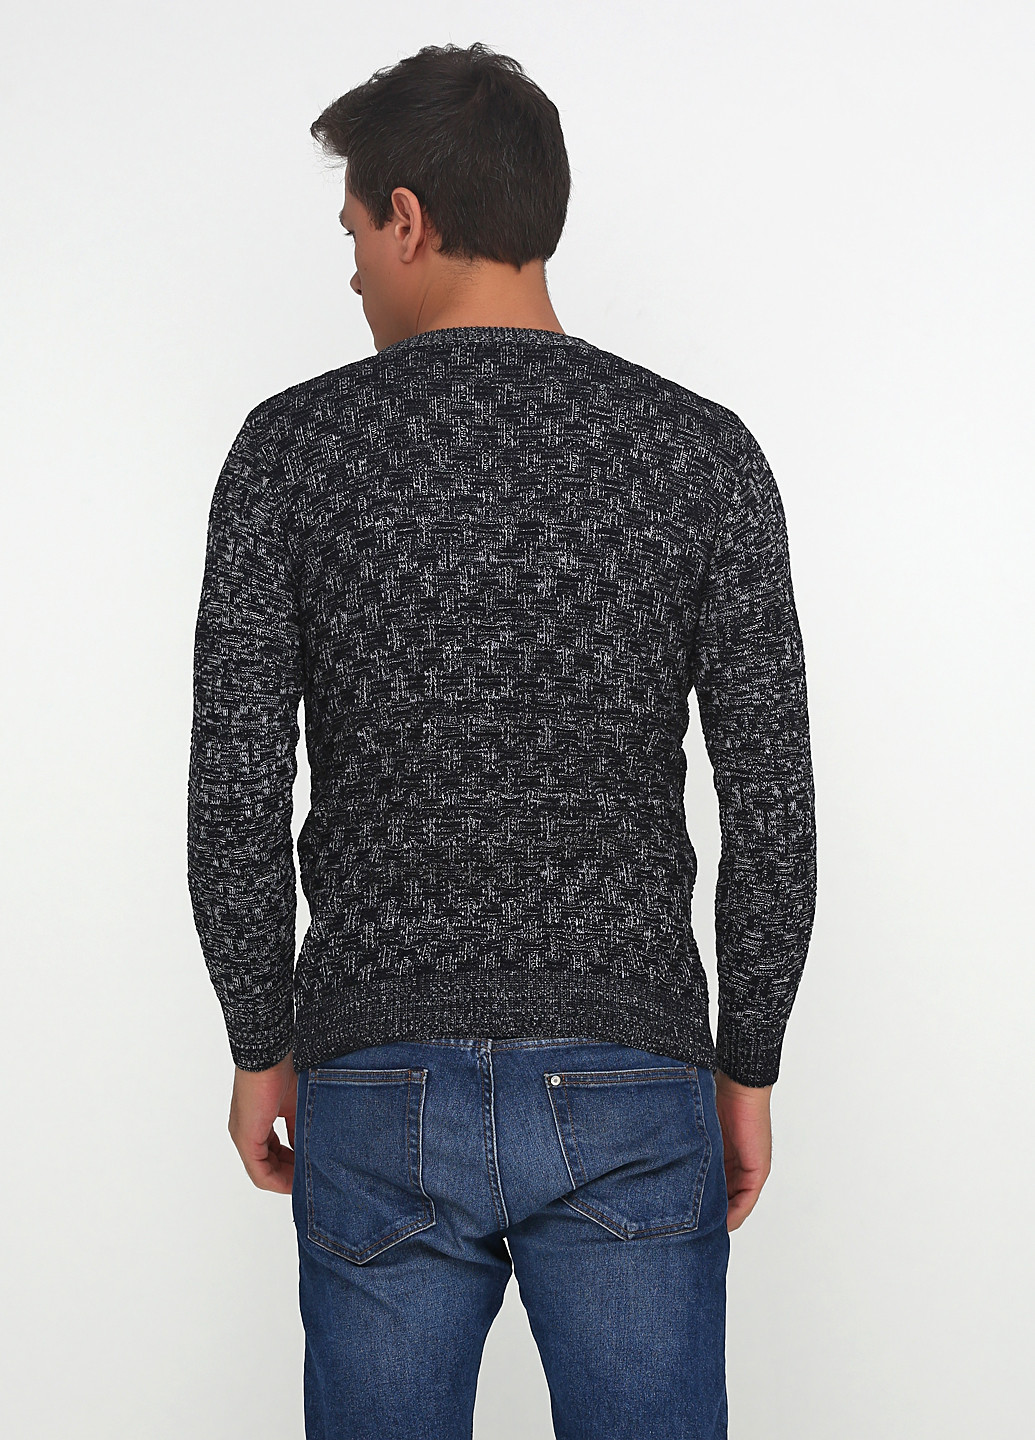 Грифельно-серый демисезонный пуловер пуловер Culis